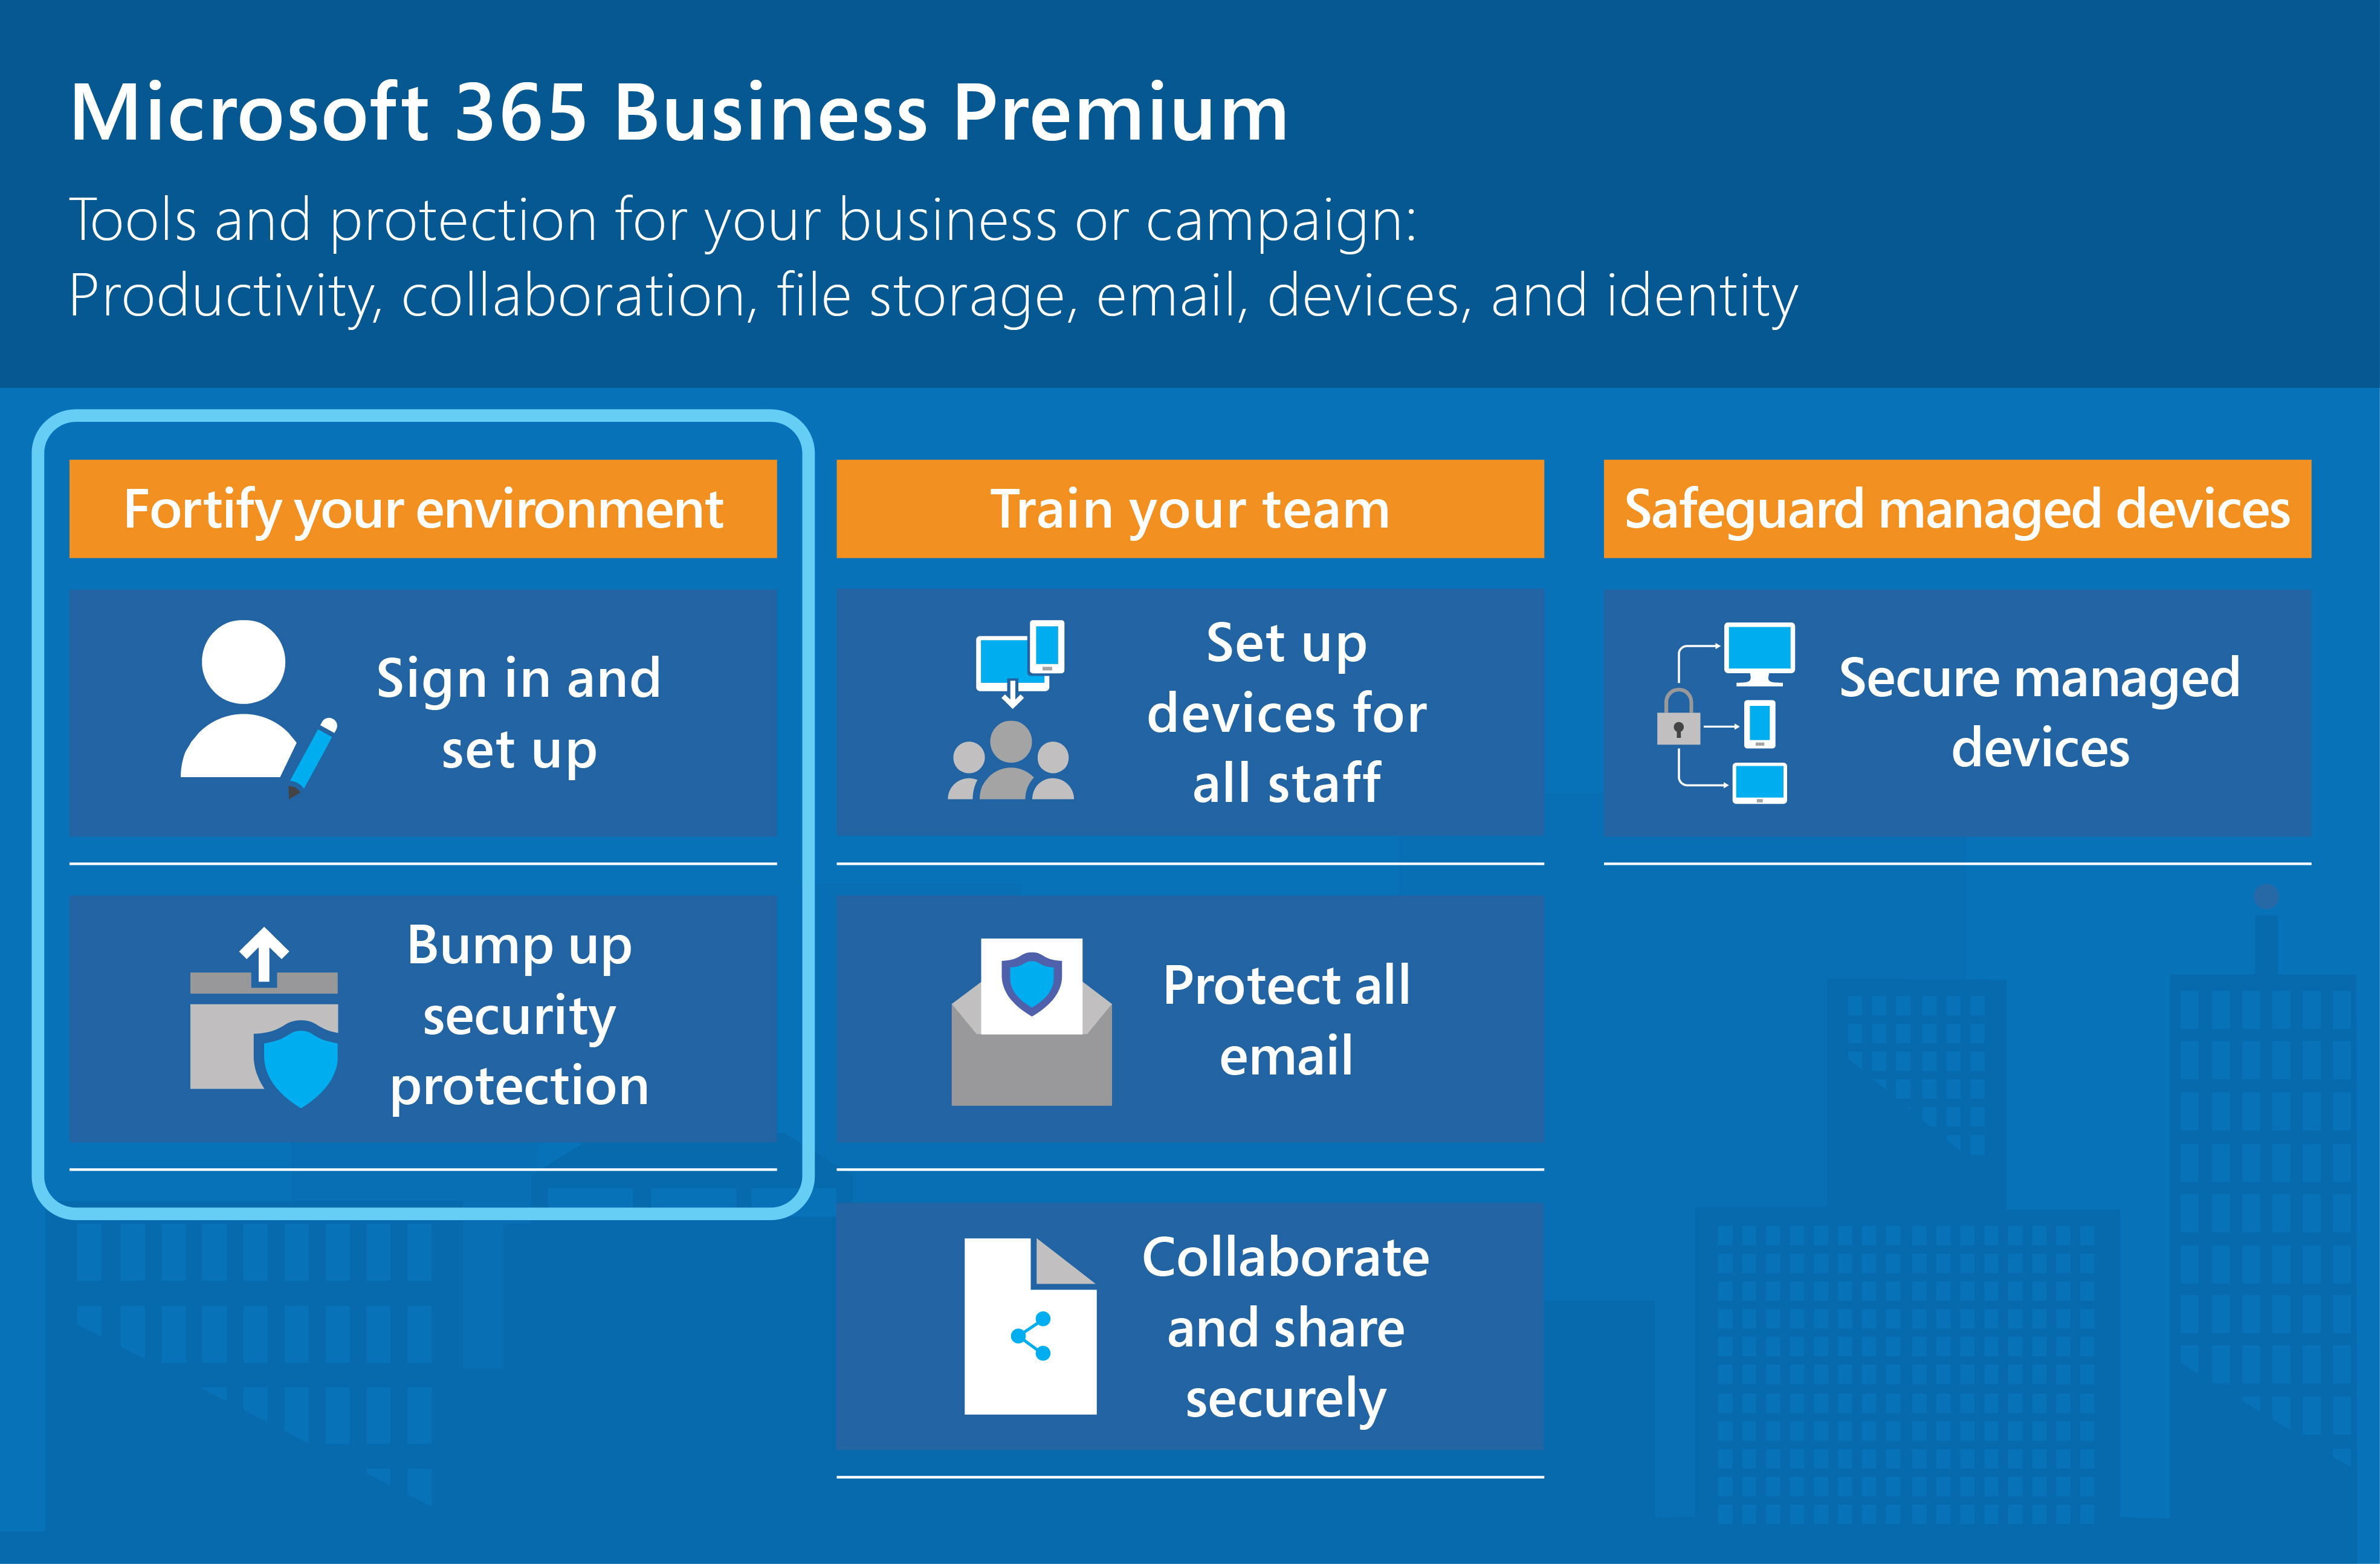 Microsoft 365 Empresa Premium protege las aplicaciones, el almacenamiento de archivos, el correo electrónico, los dispositivos y las identidades.